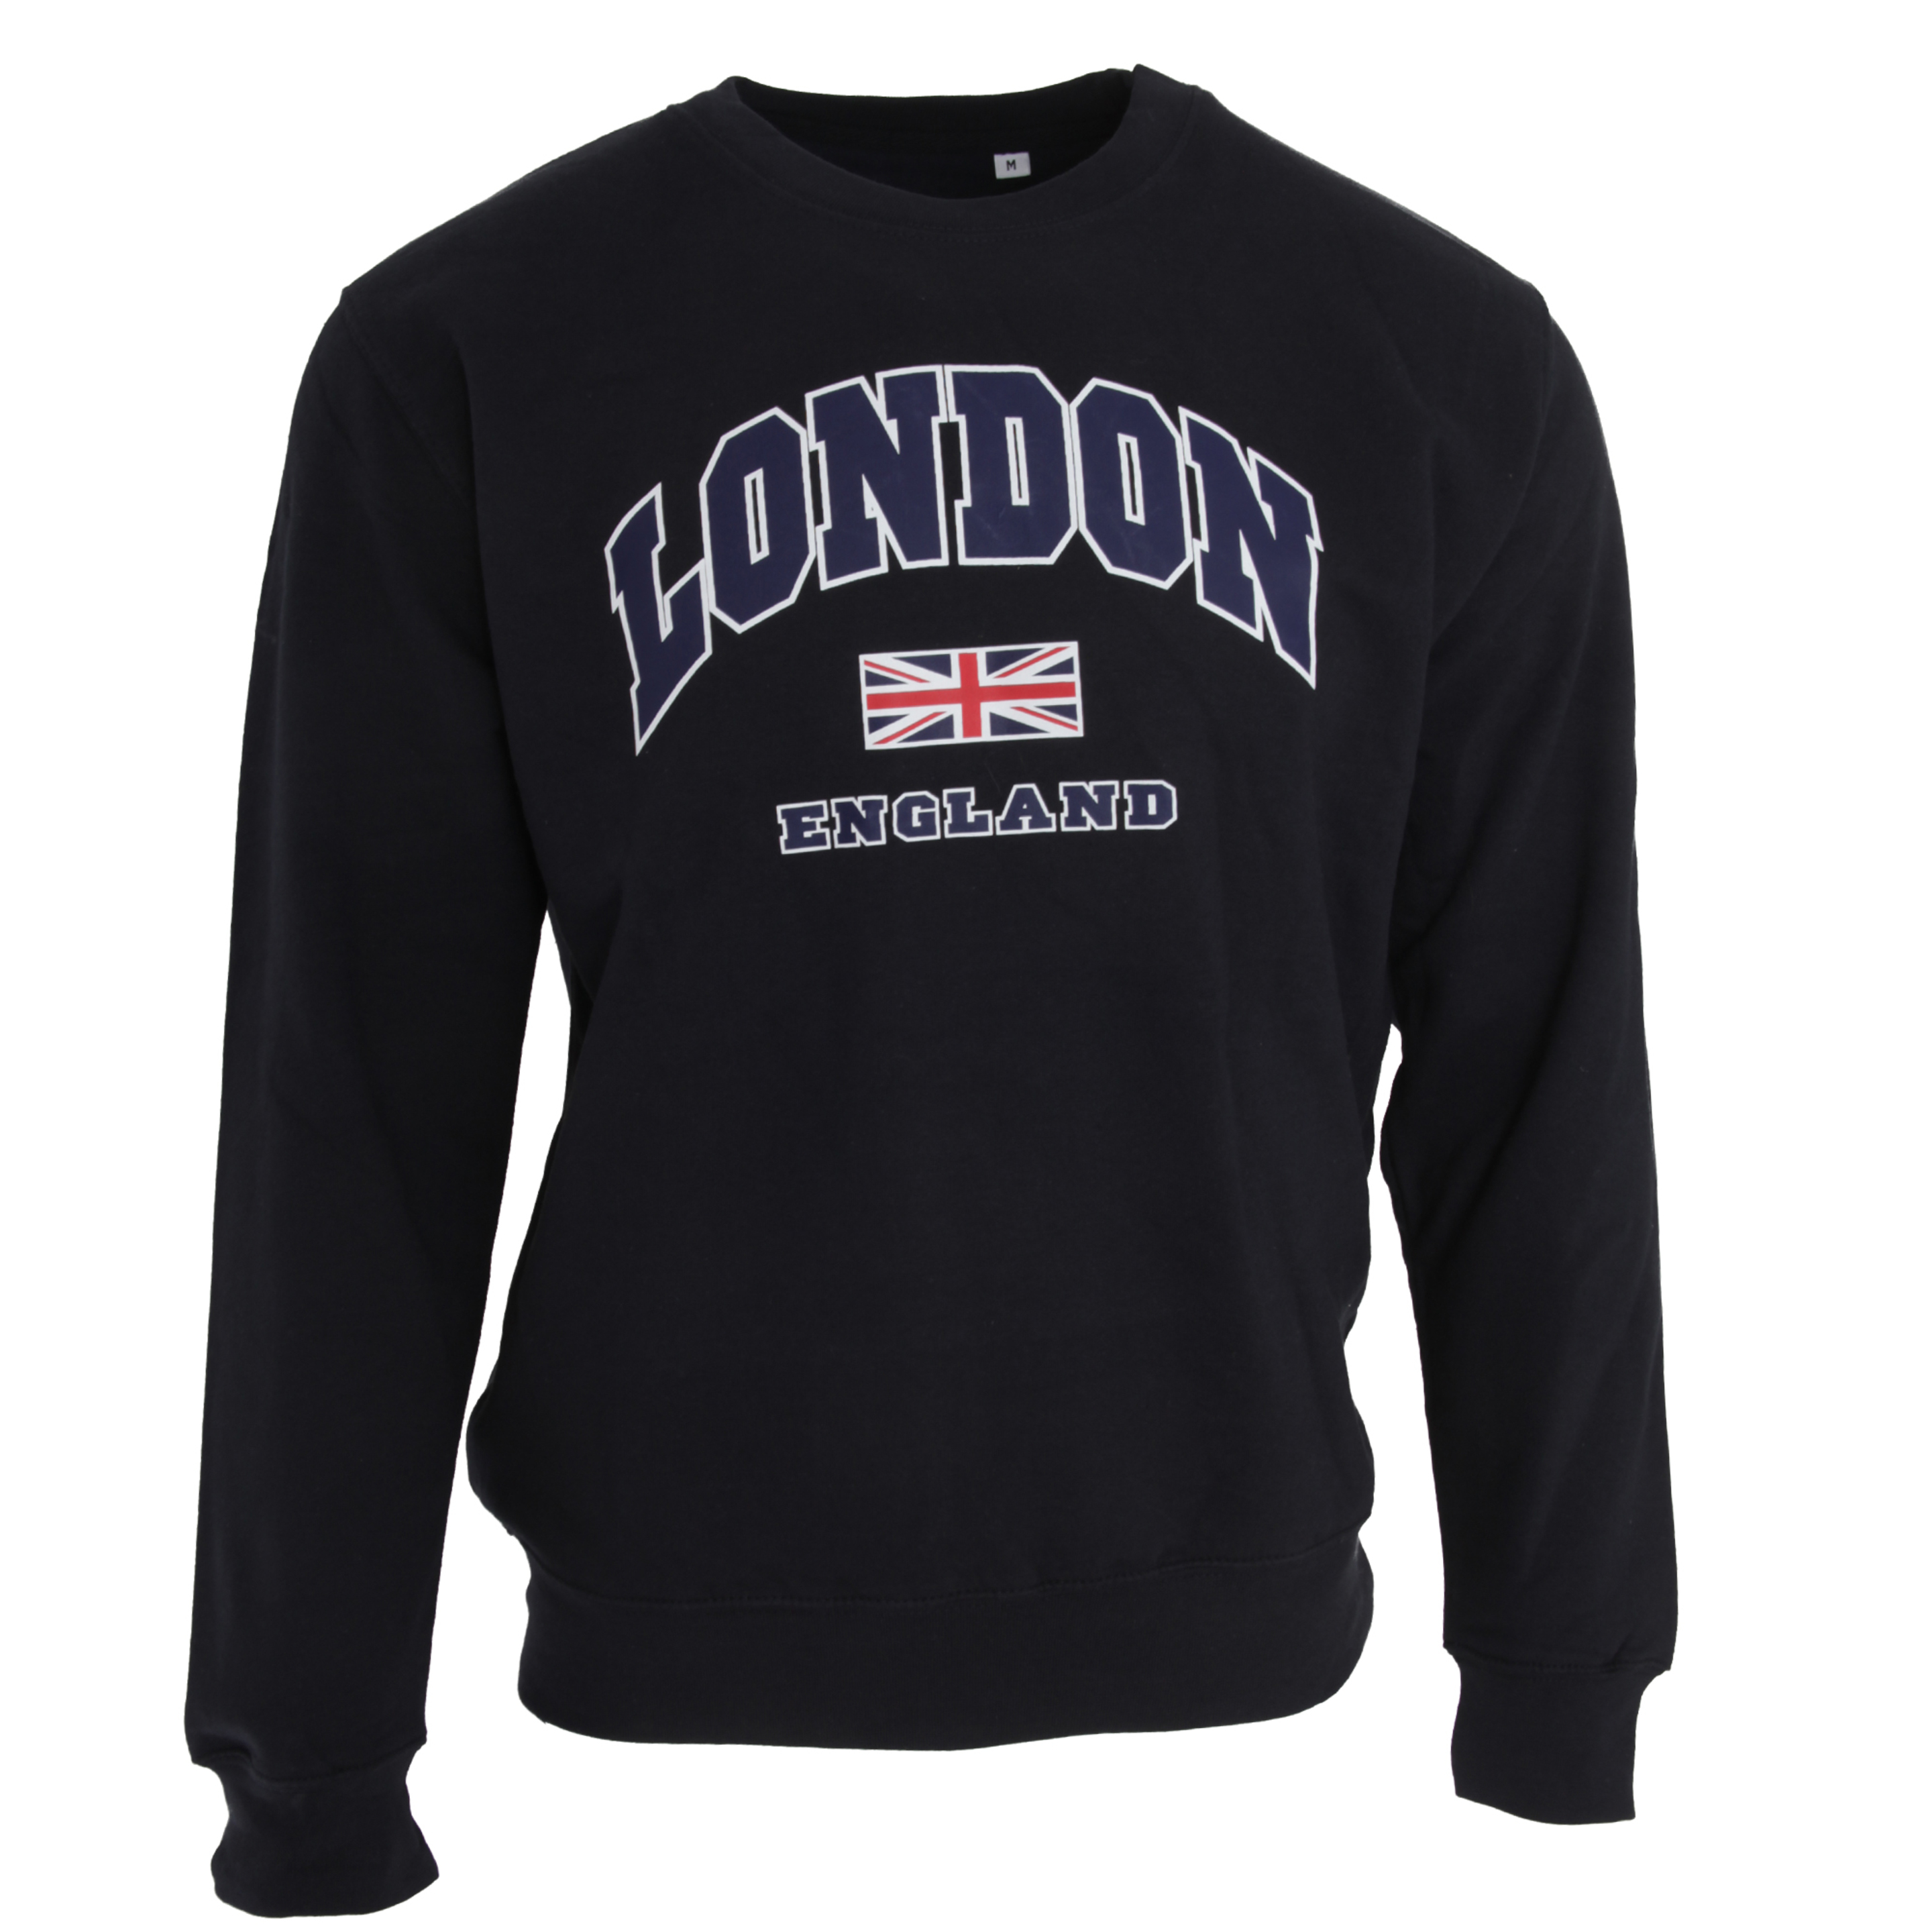 Jersey Con Diseño De Bandera Reino Unido Modelo London Uso Universal Textiles - azul - 